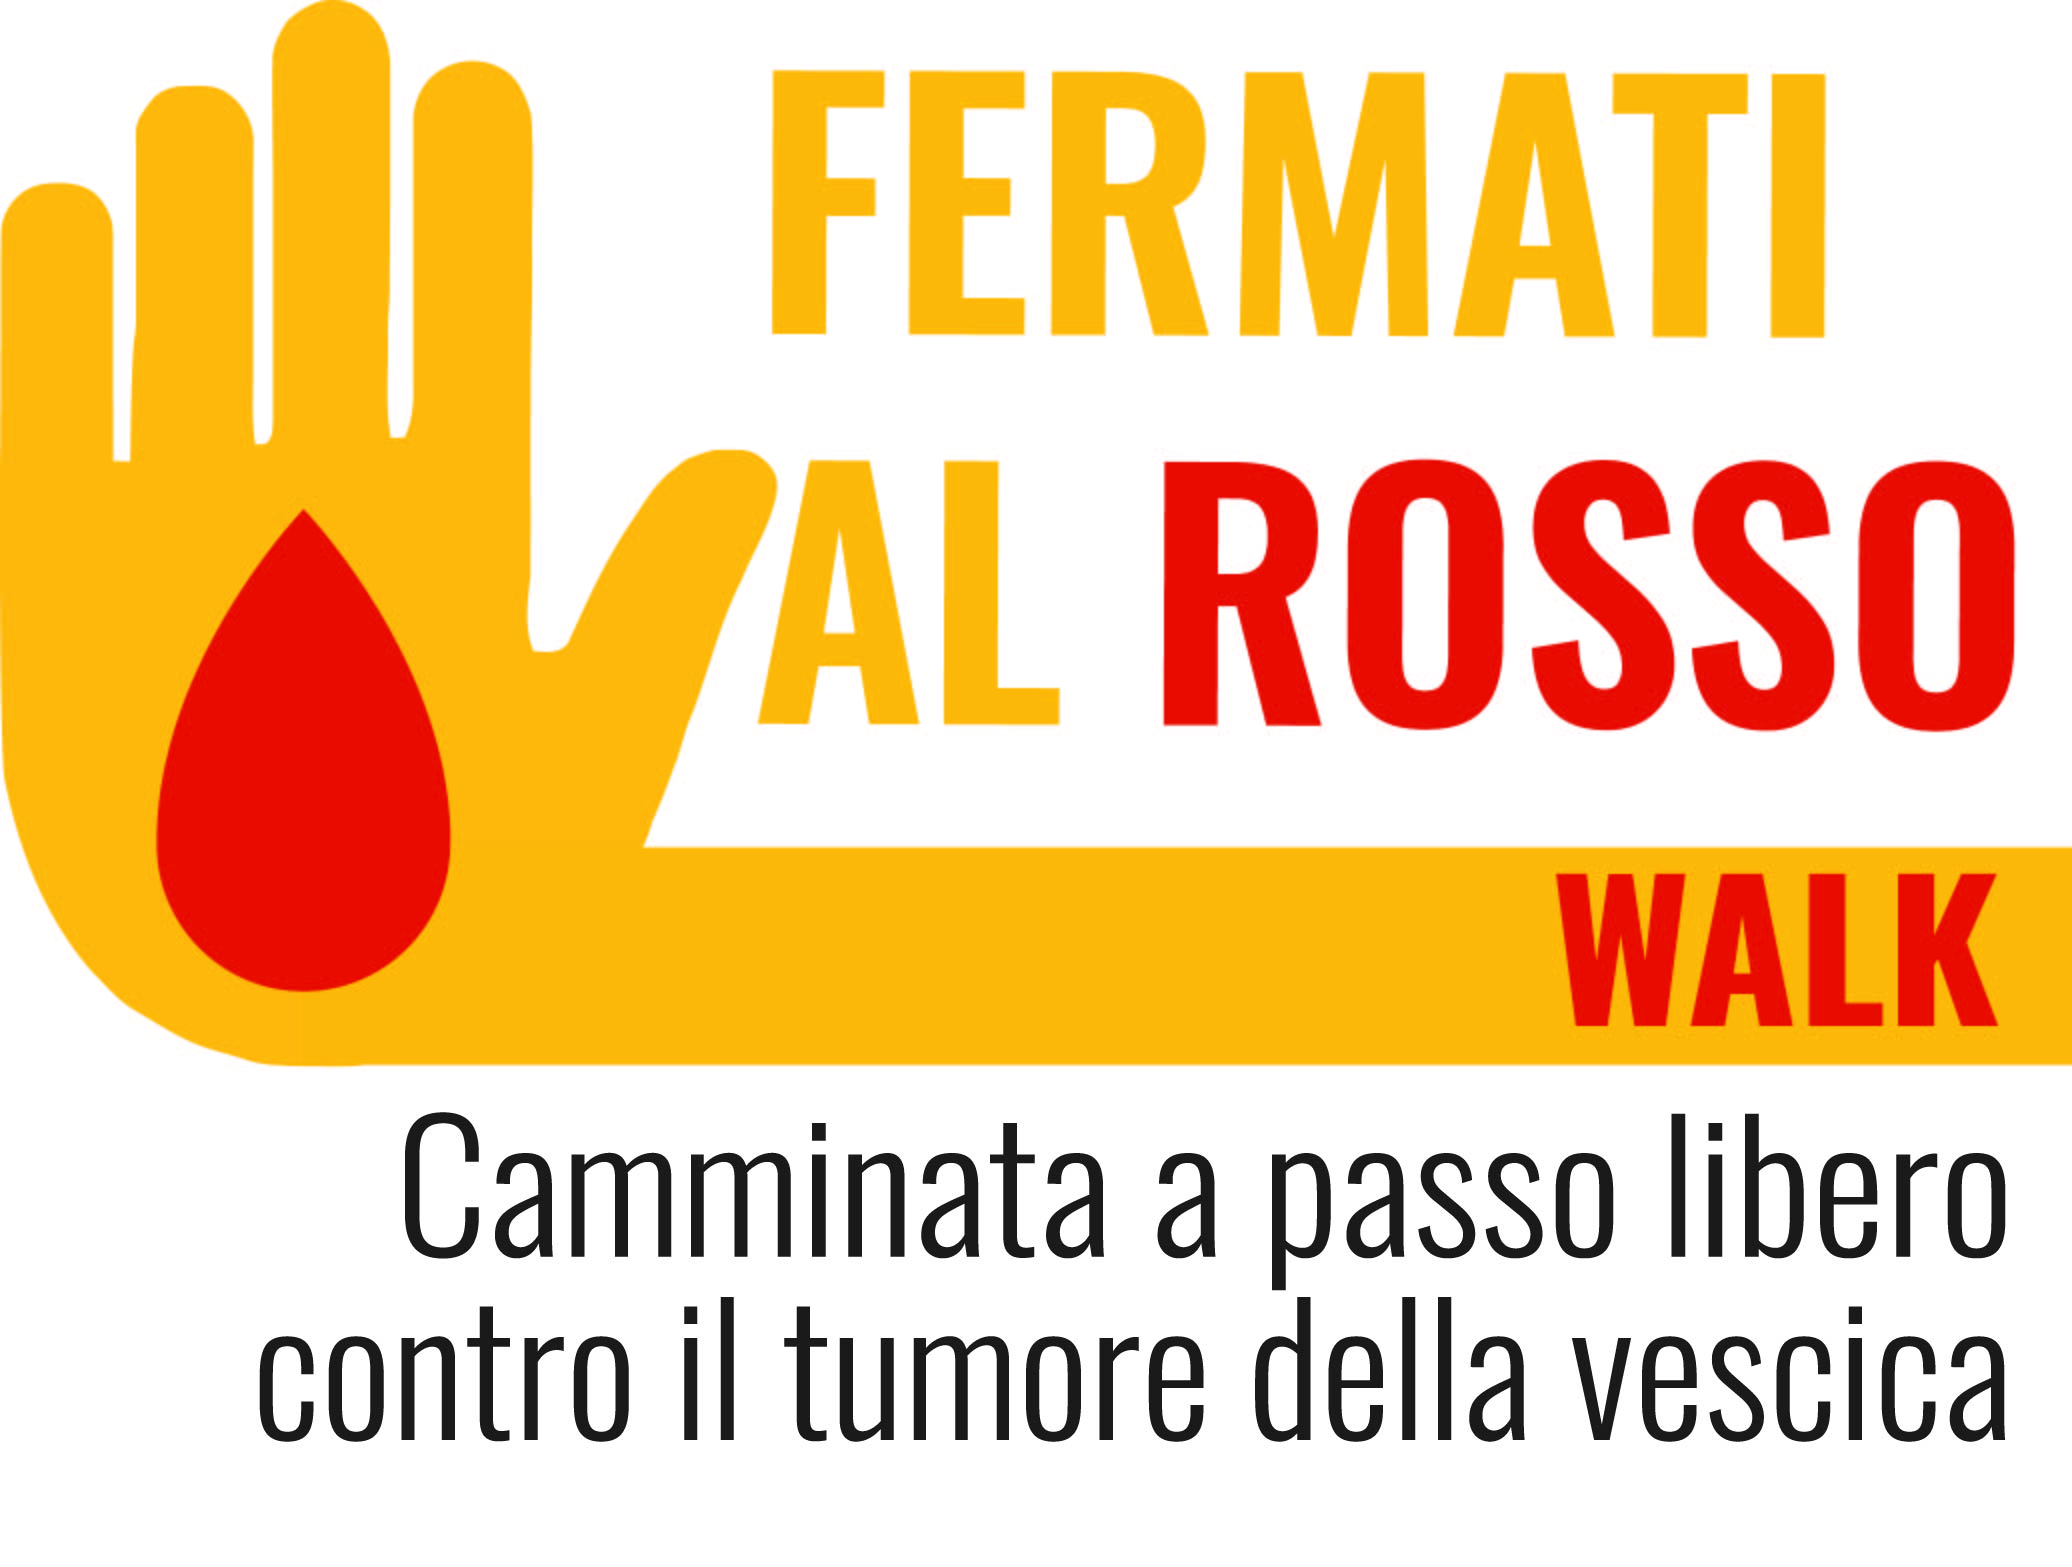 Grande partecipazione per “Fermati al Rosso Walk”: la ‘camminata’ in tre tappe che ha attraversato il centro di Milano per combattere il tumore della vescica. Un cambio di passo nell’informazione su prevenzione e diagnosi precoce